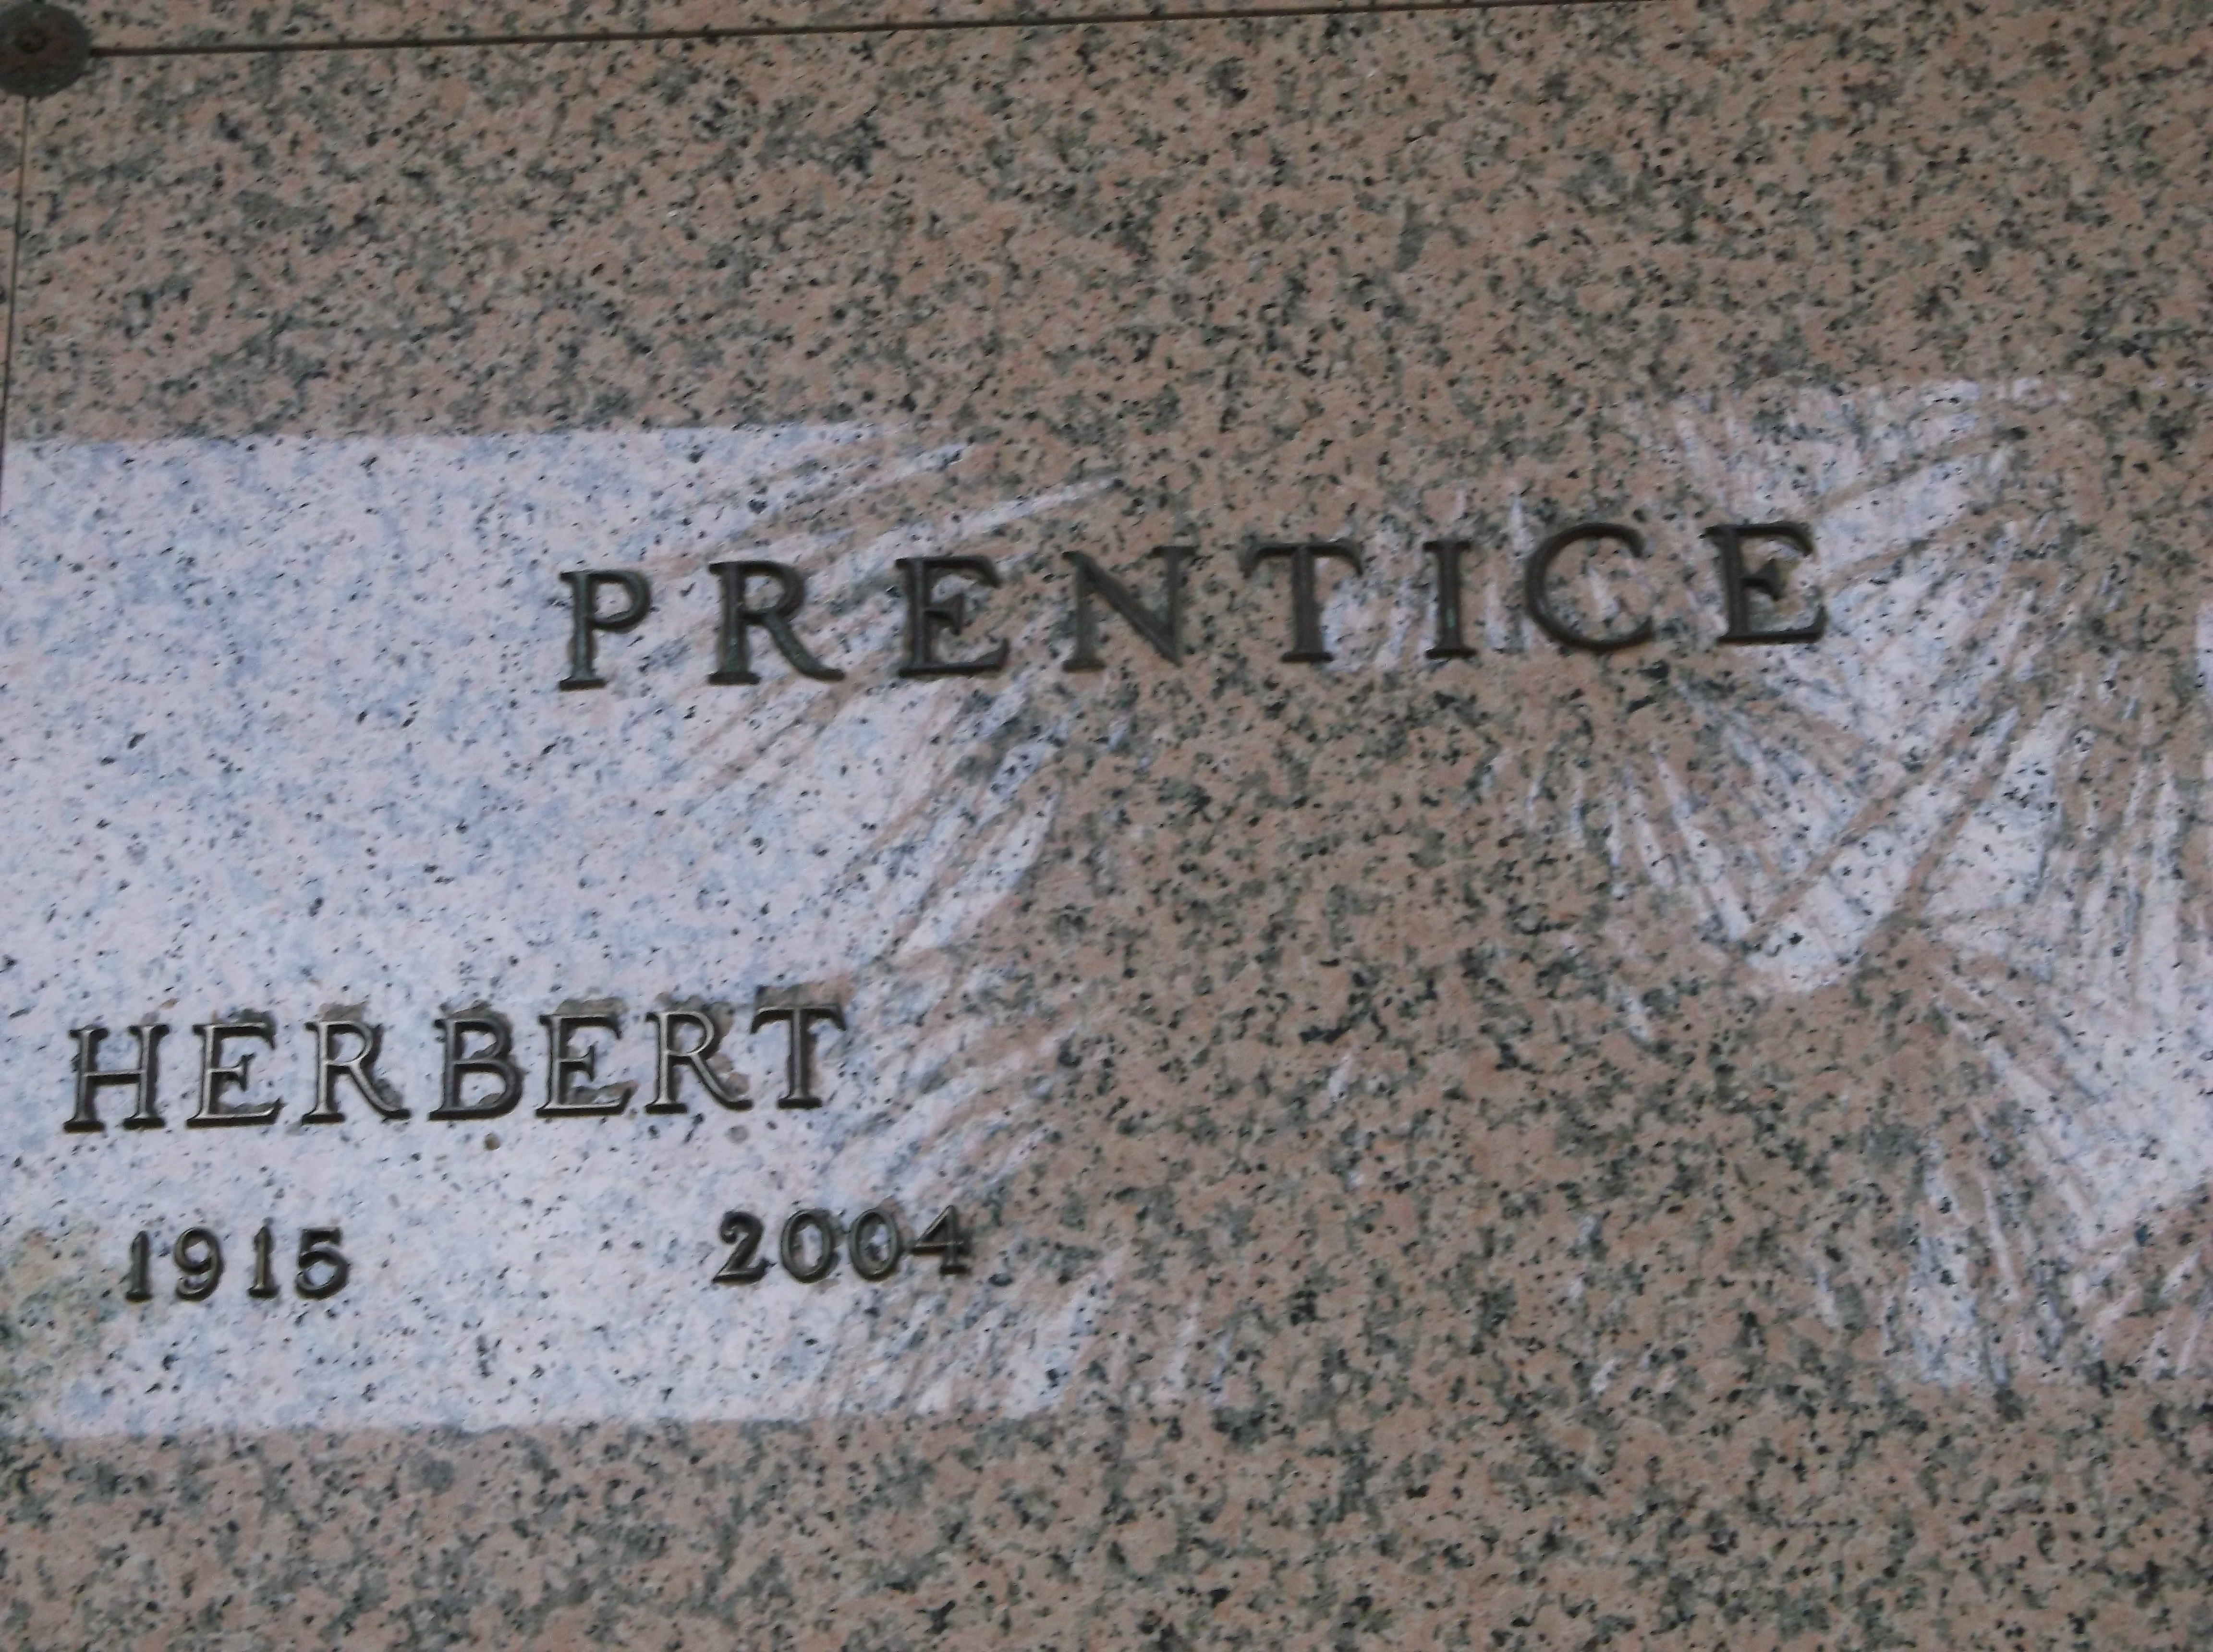 Herbert Prentice